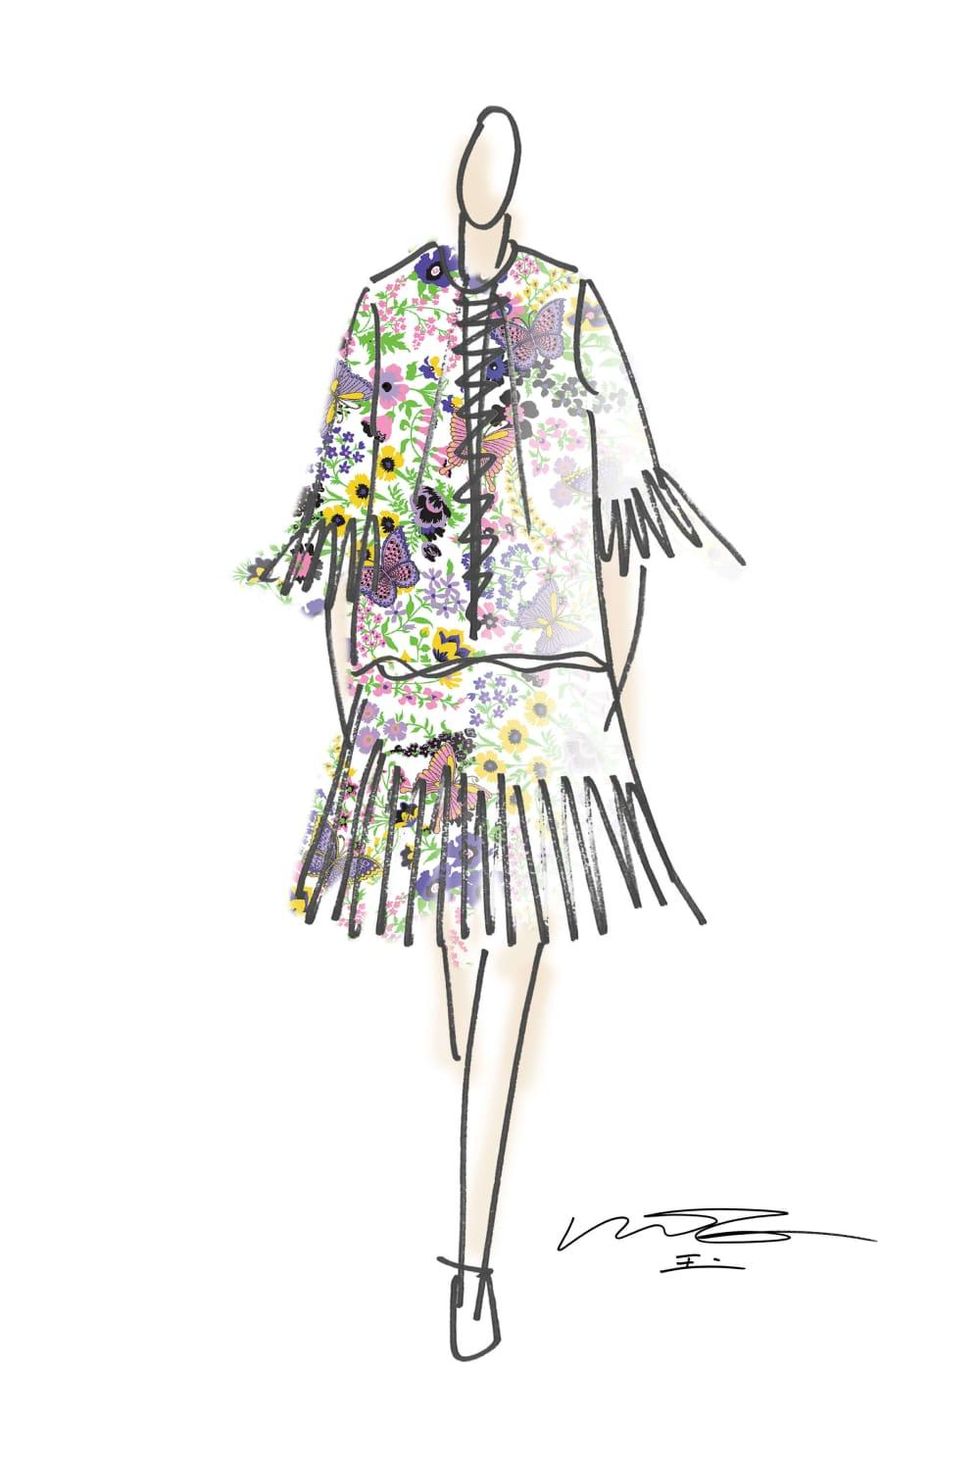 Vivienne Tam designer inspiration sketch spring 2017